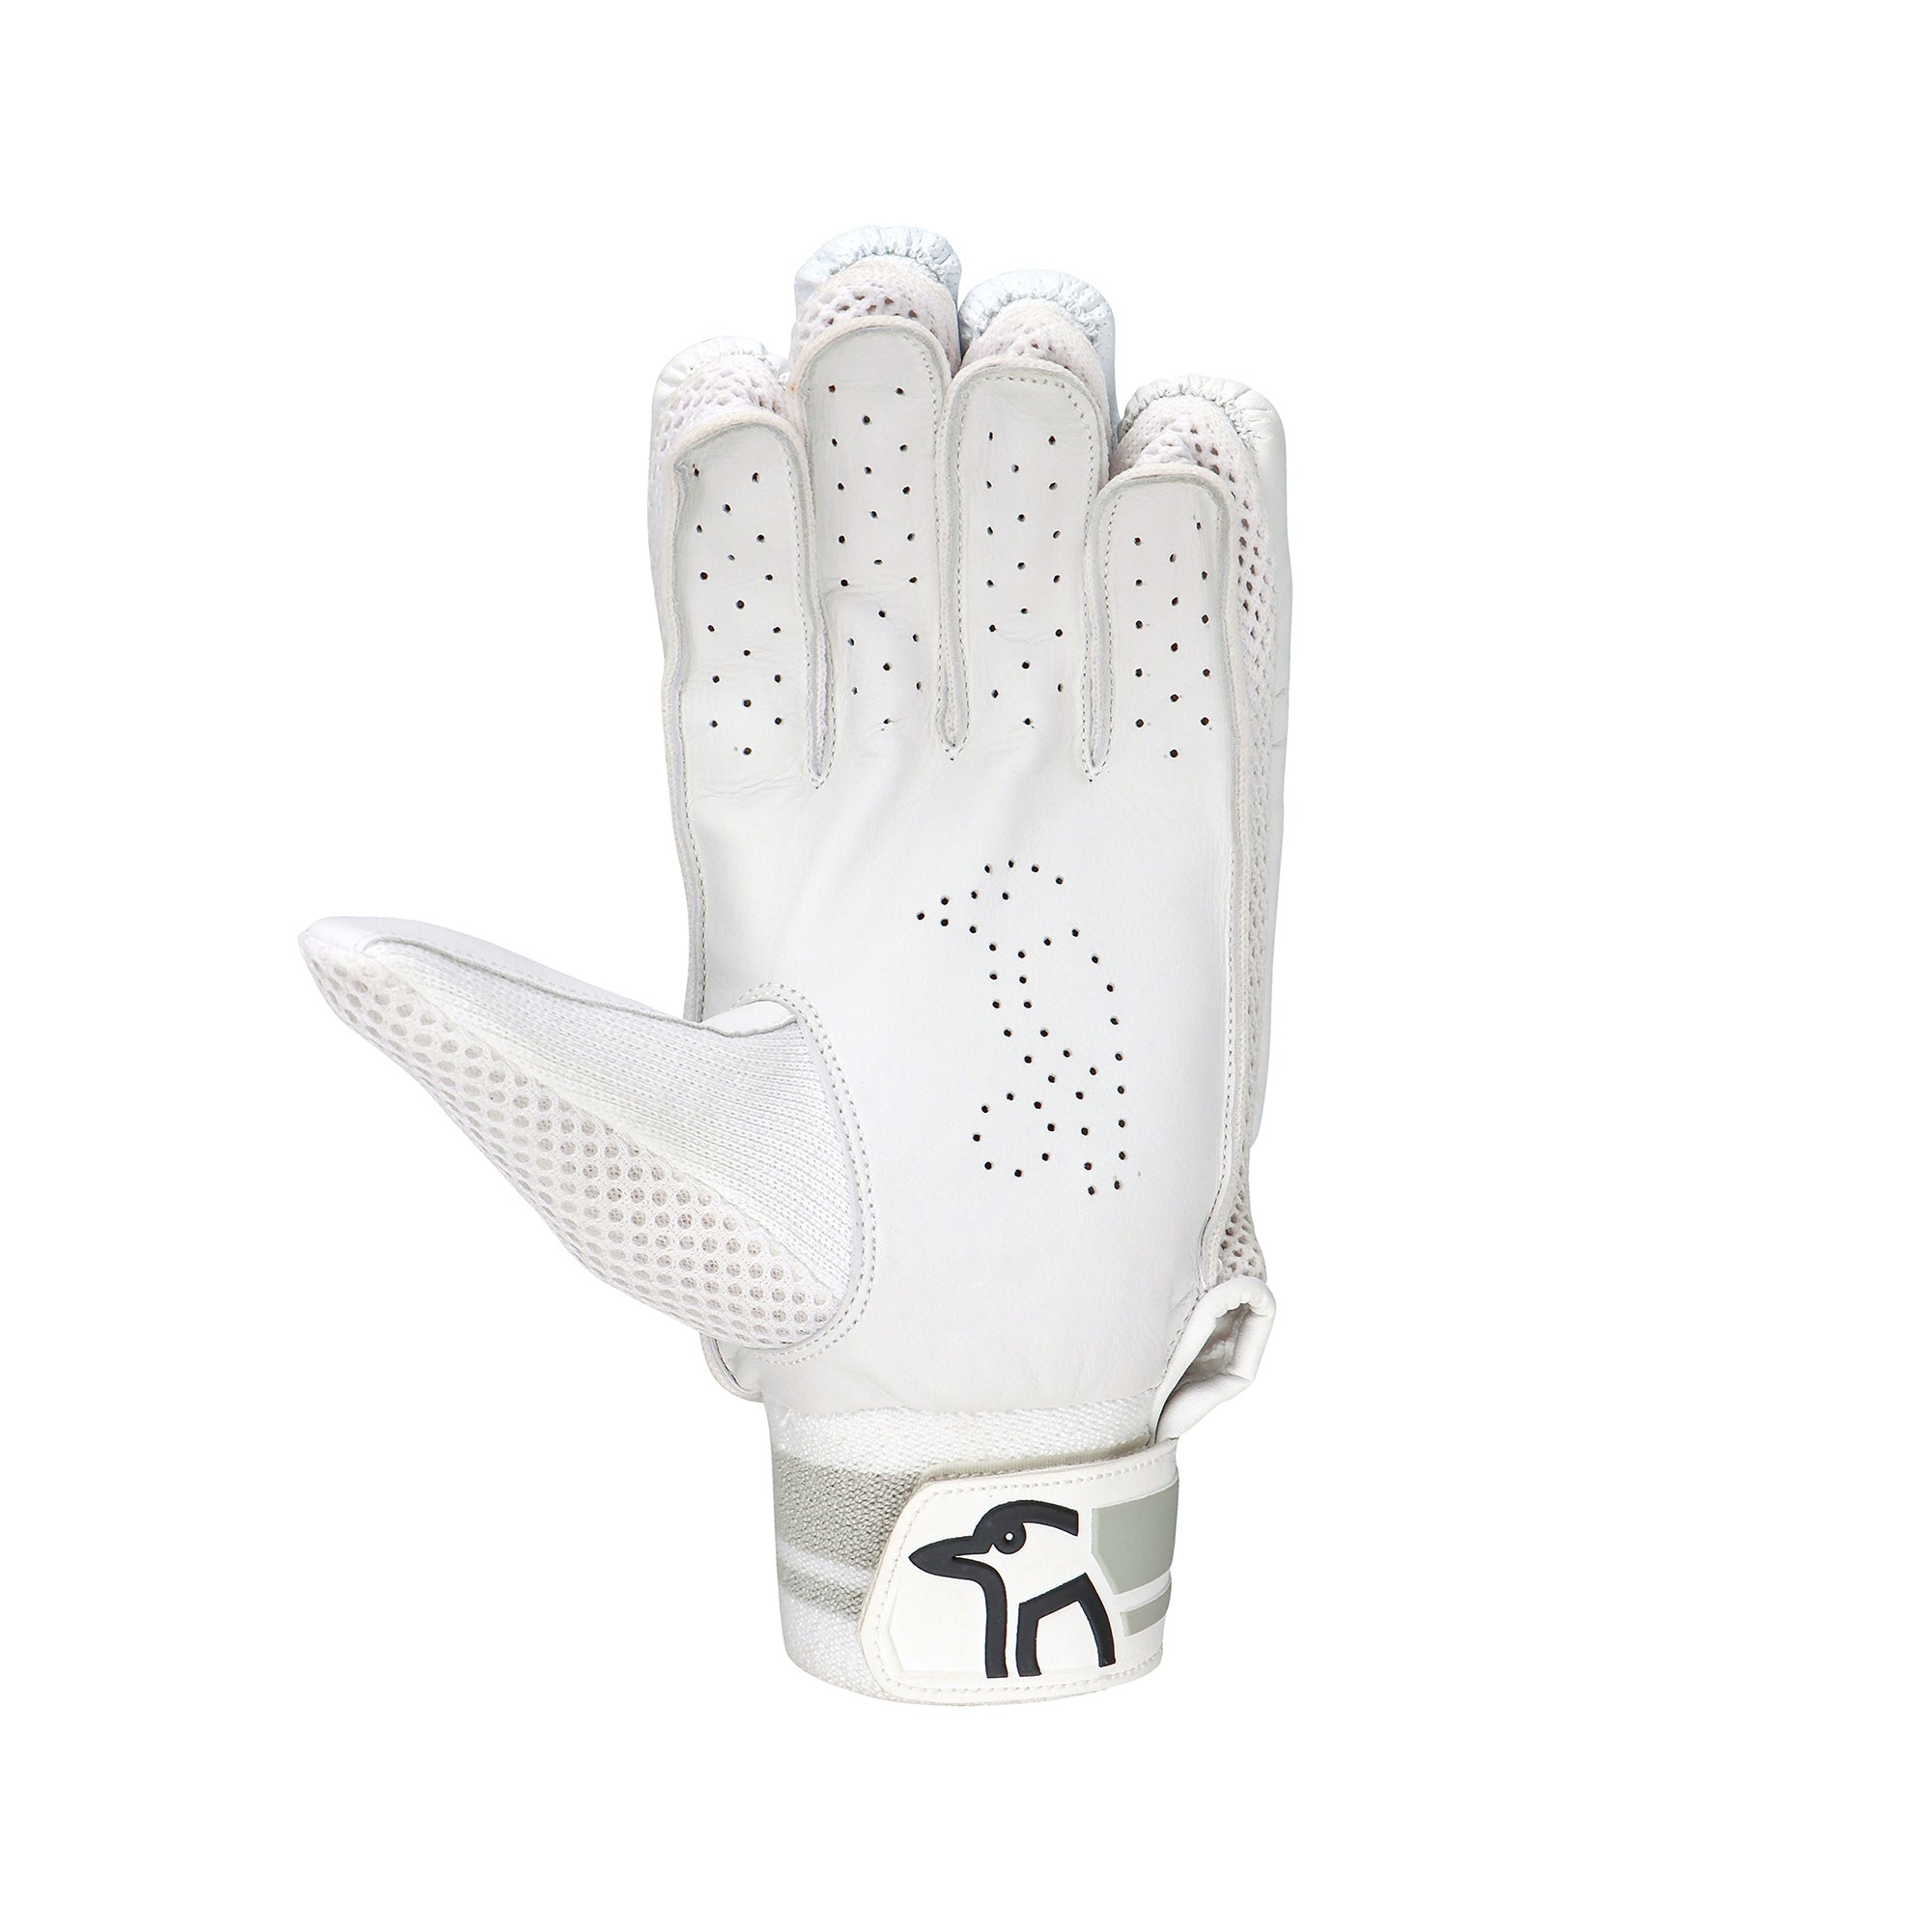 Kookaburra Ghost Pro 7.0 Batting Gloves - The Cricket Warehouse